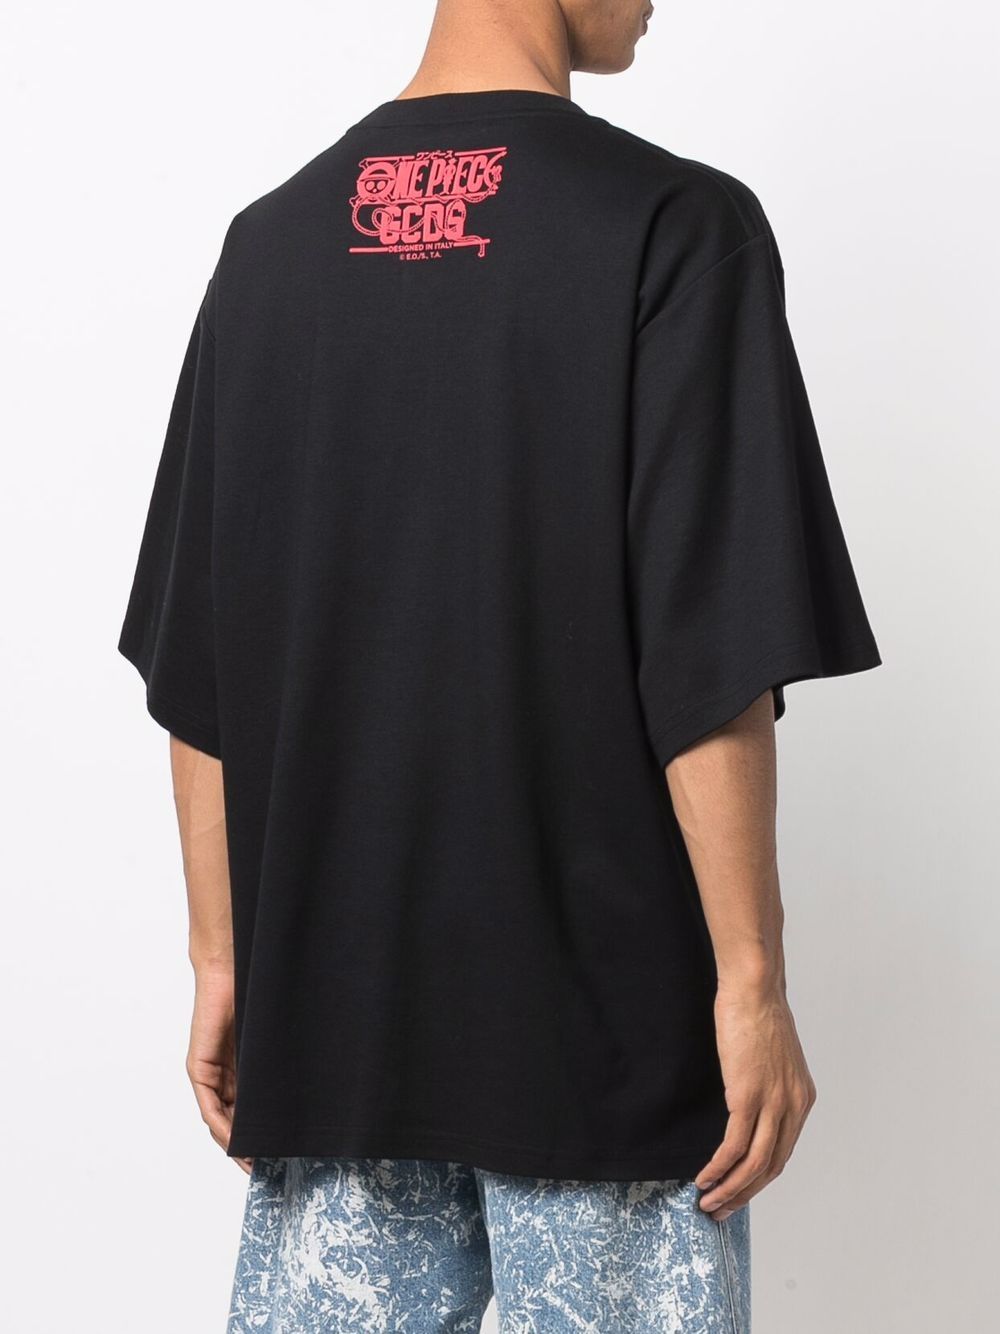 Gcds logo-print Cotton T-shirt - Farfetch